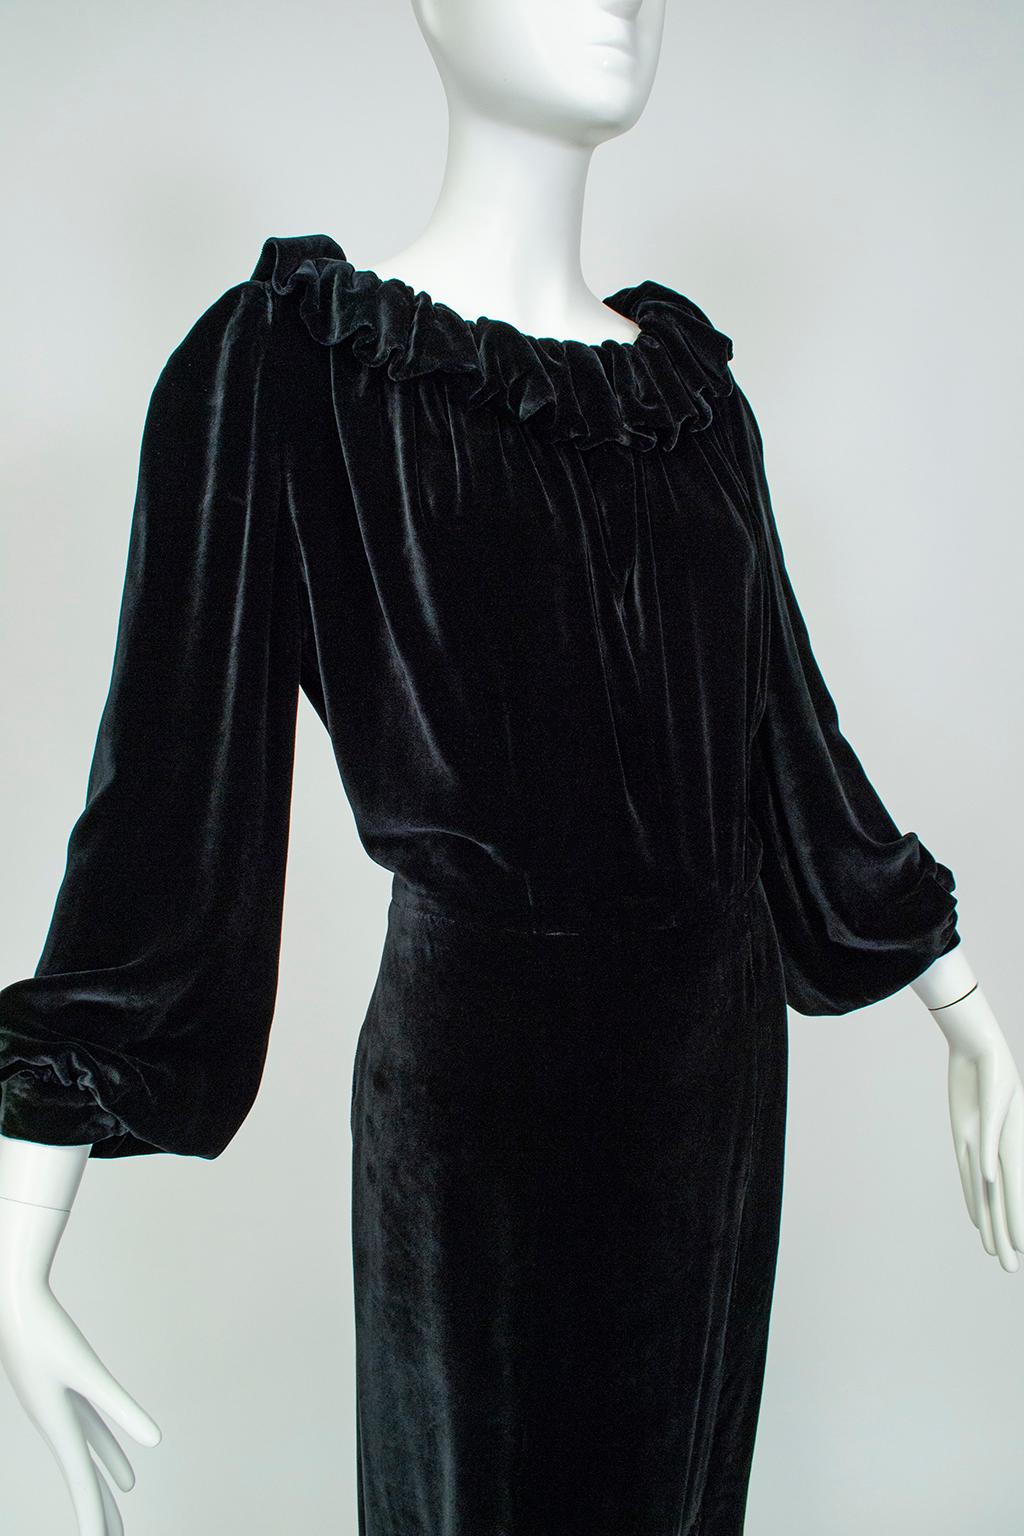 Aesthetic Open Back Black Velvet Ruff Gown w Train, Hearst Castle - M-L, 1930s For Sale 1